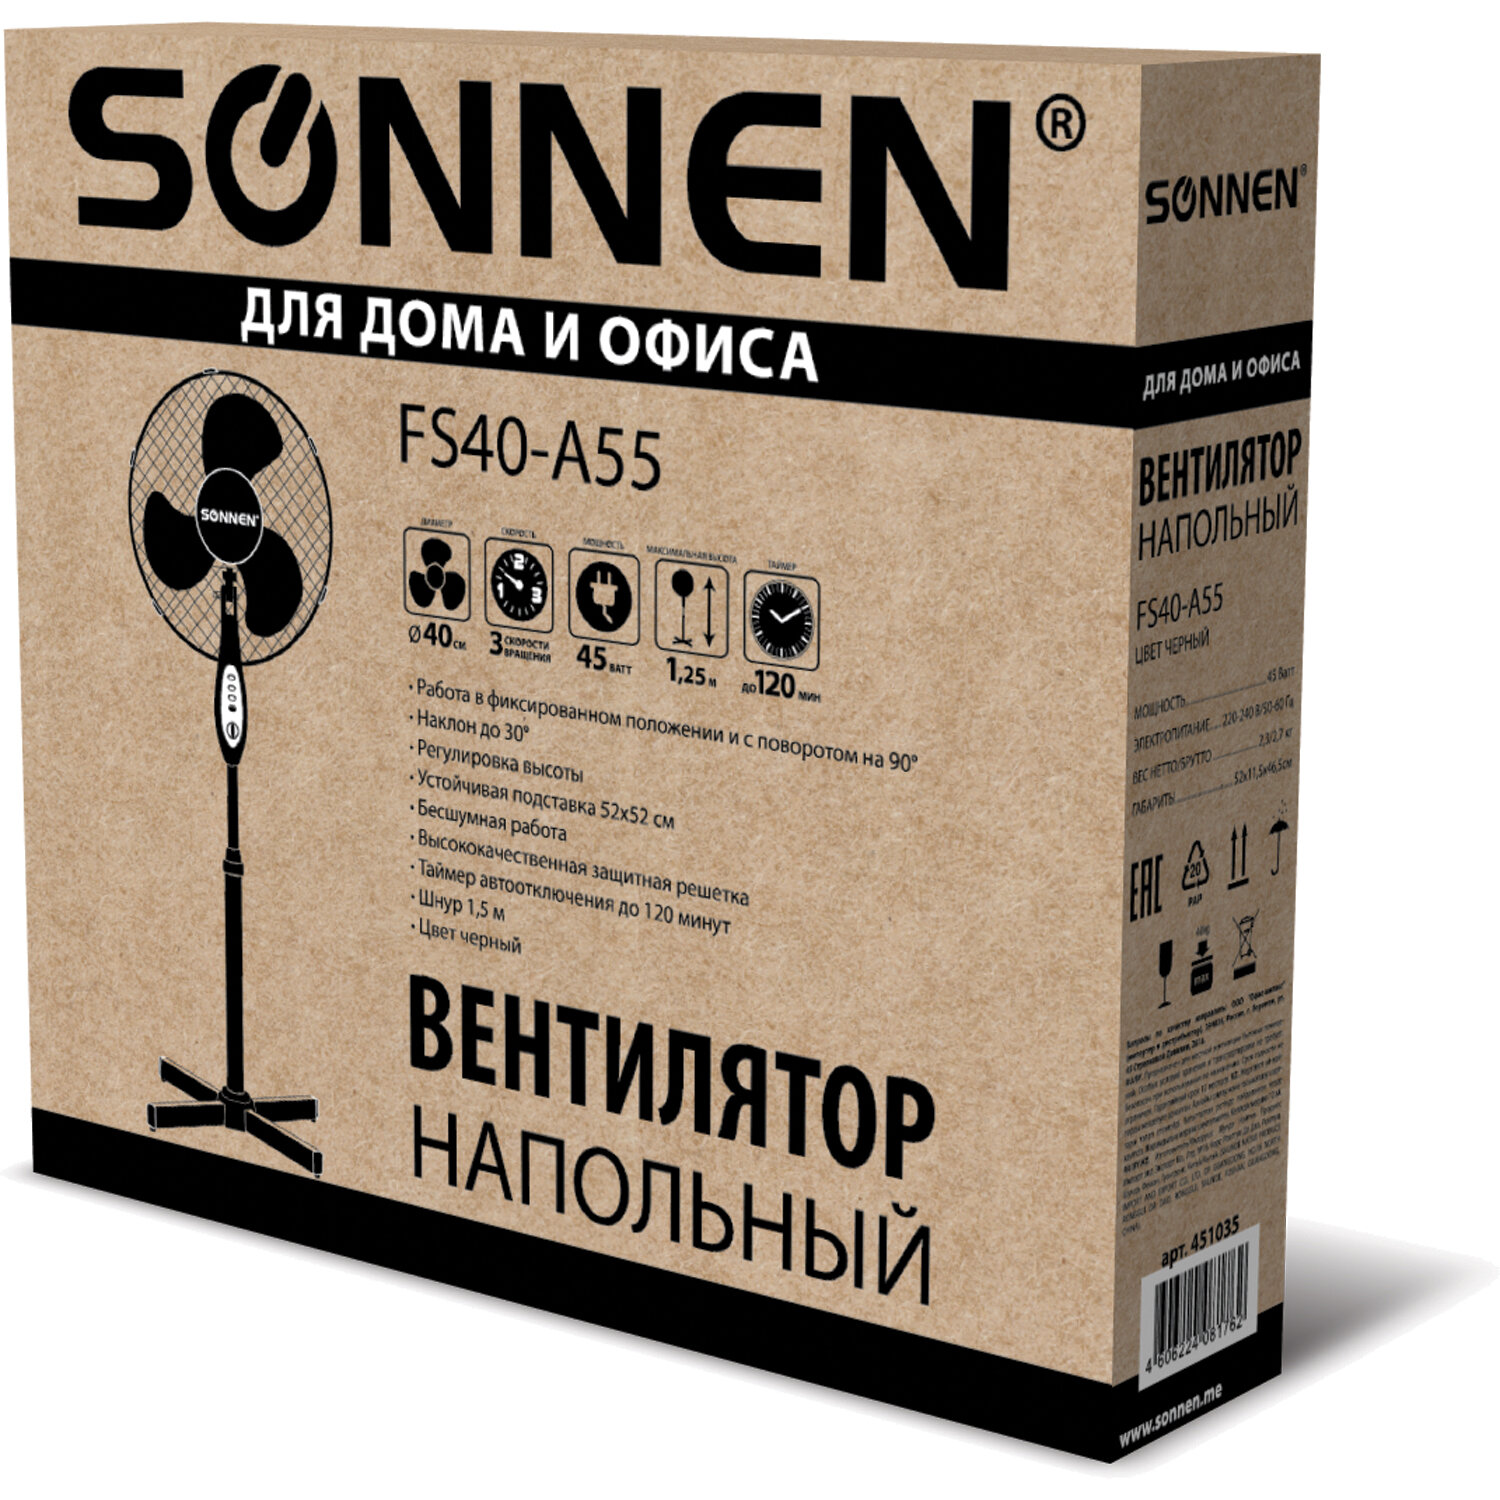 Вентилятор напольный Sonnen FS40-A55 3 скоростных режима таймер d=40 см 45Вт - фото 12